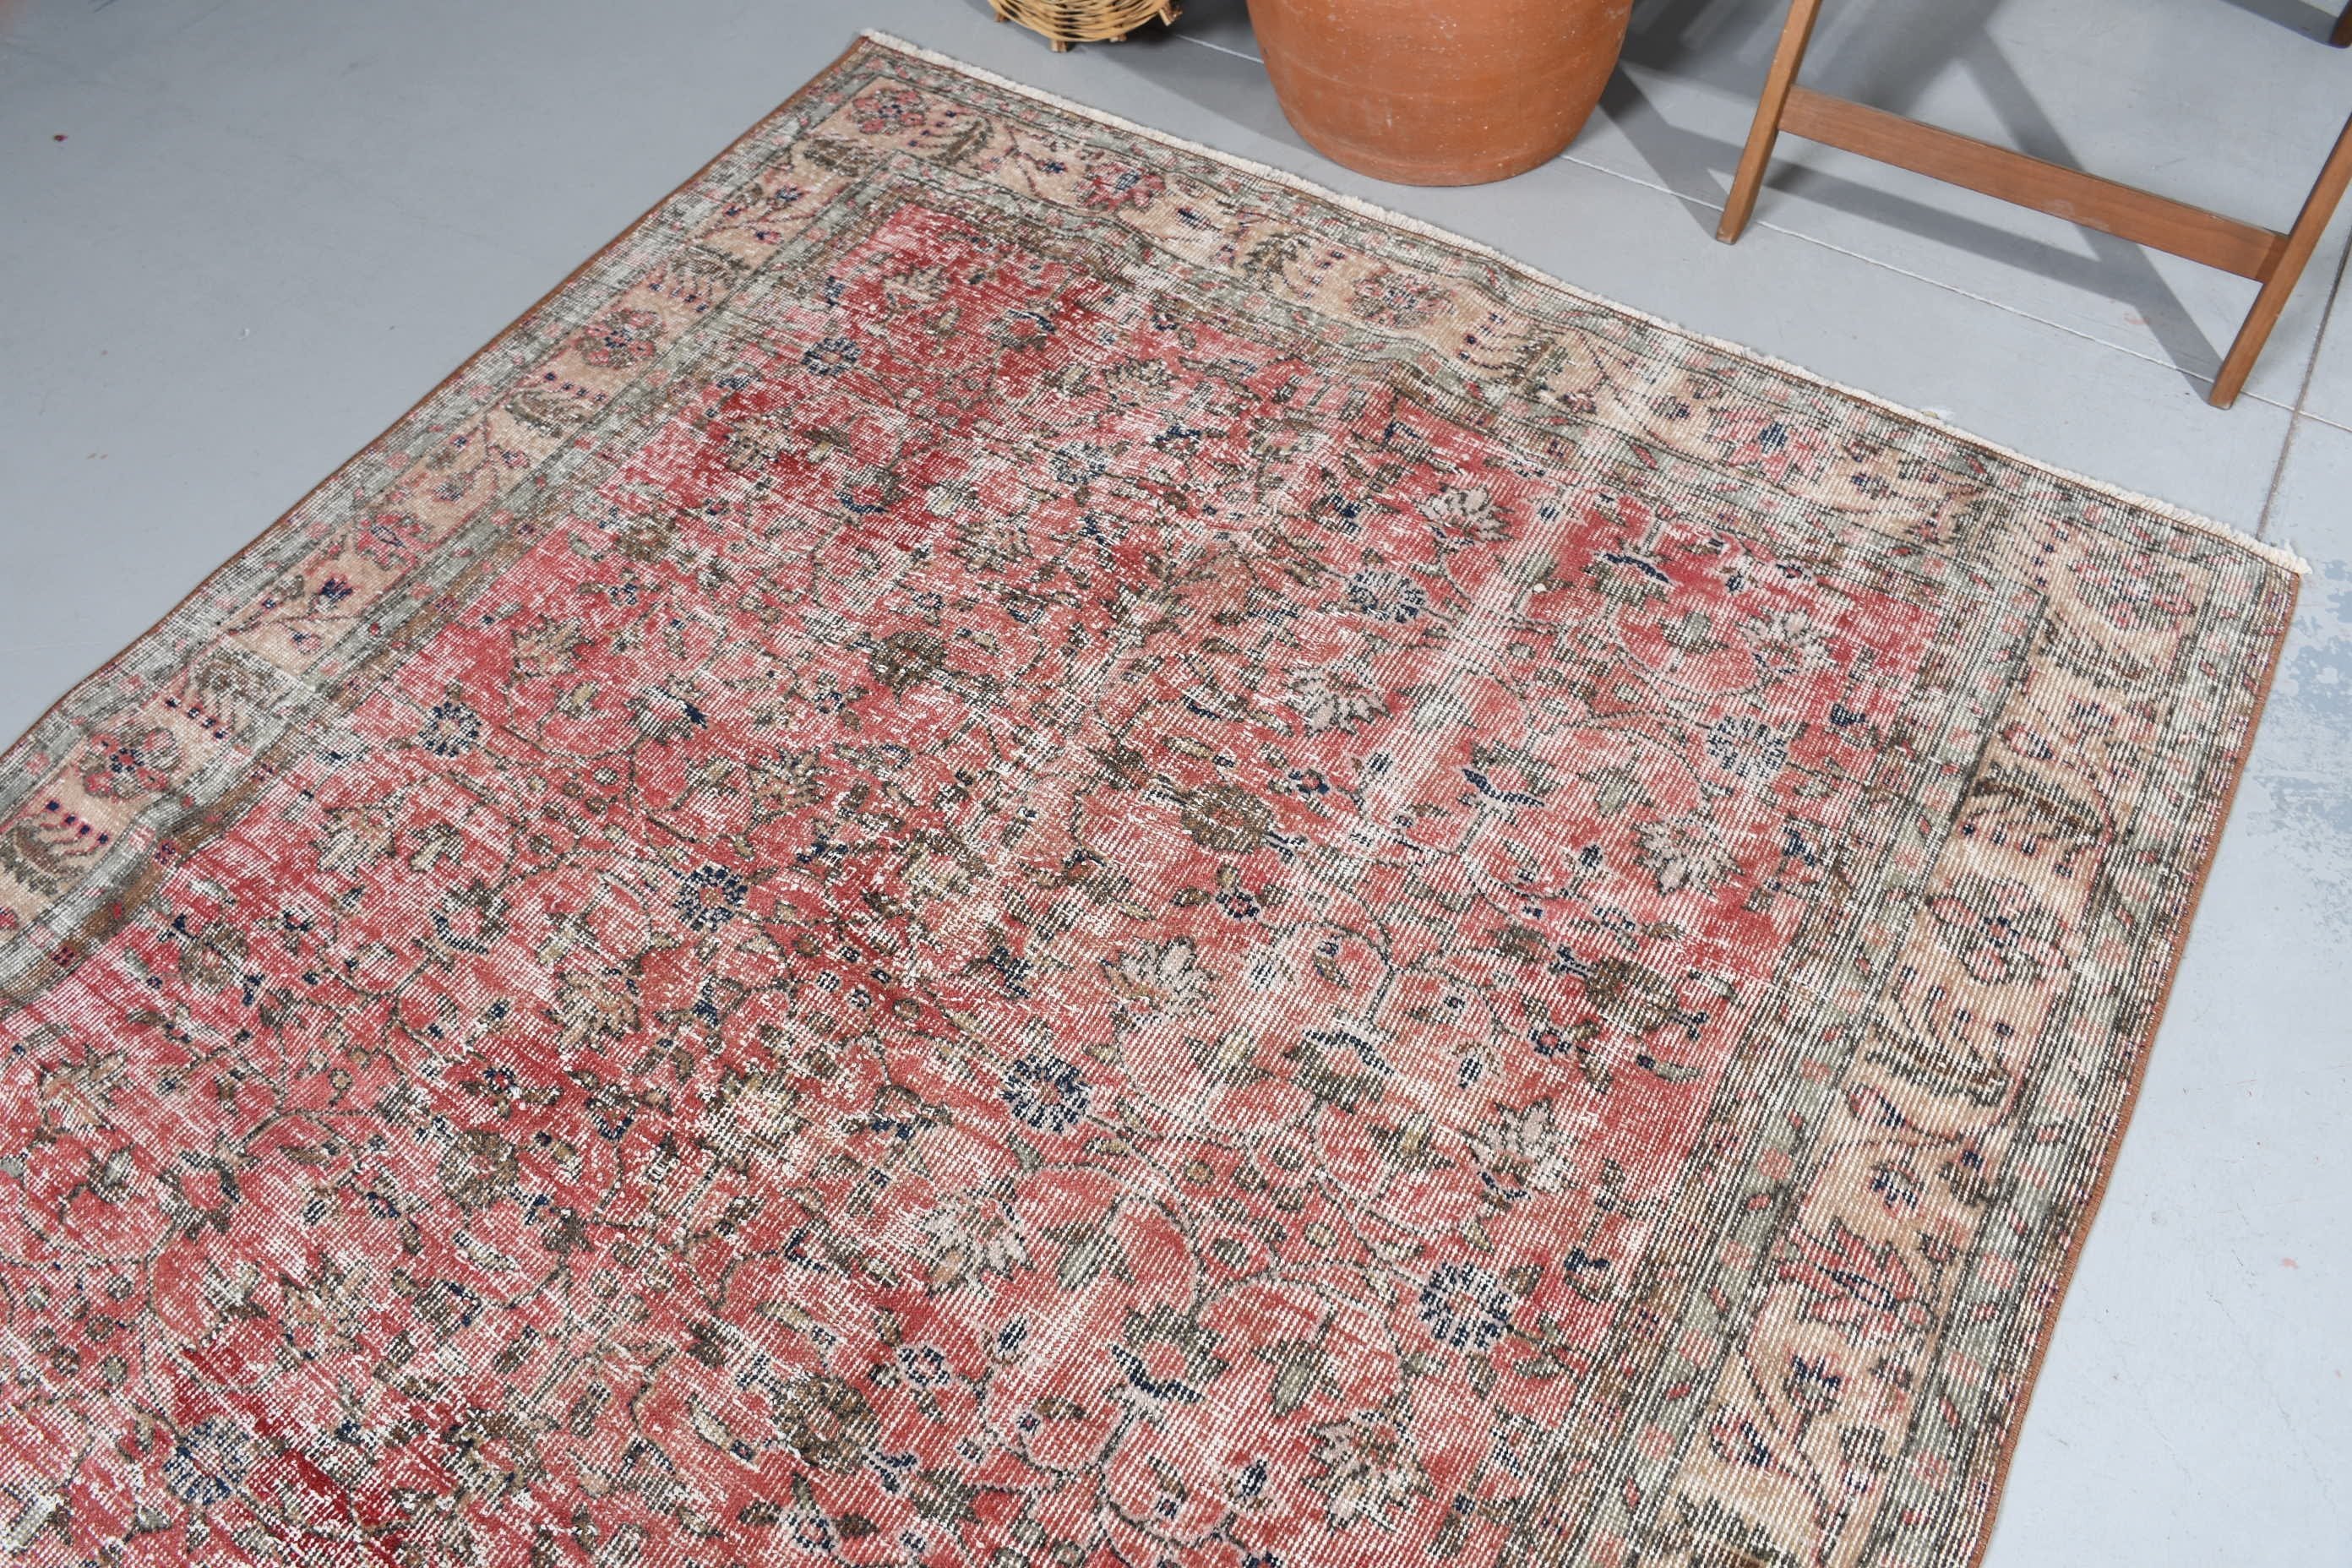 Red Oriental Rug, Turkish Rug, 5.4x8.6 ft Large Rugs, Wool Rug, Vintage Rug, Dining Room Rugs, Living Room Rugs, Bohemian Rug